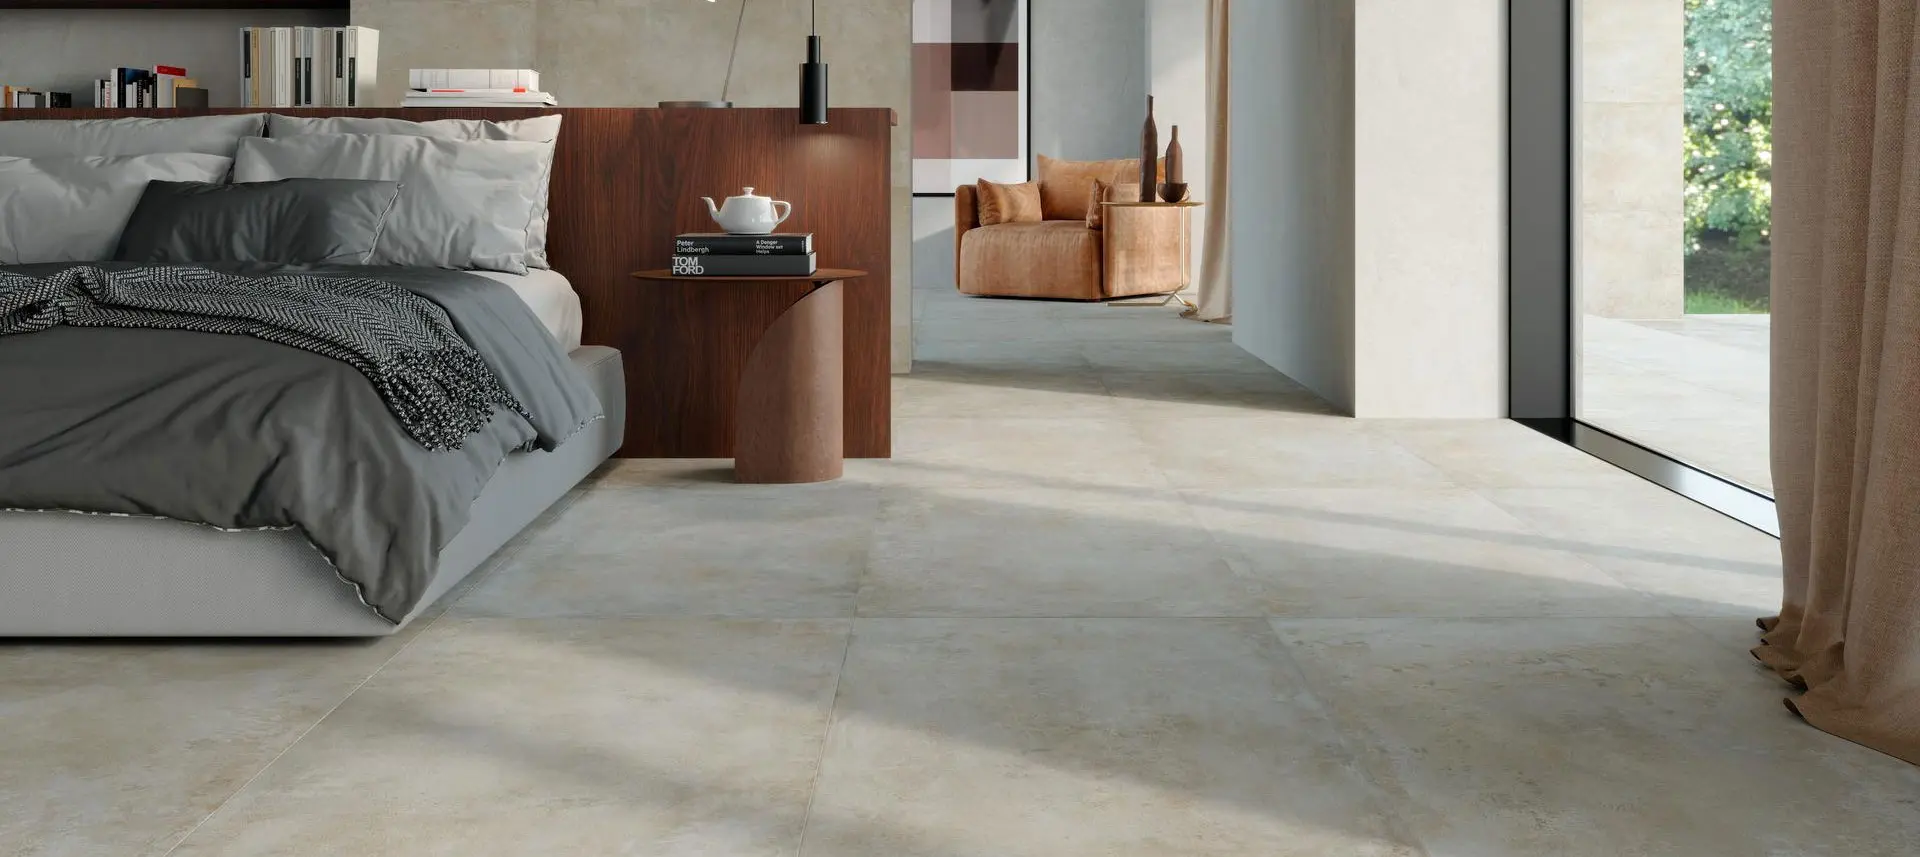 Bedroom floor tiles